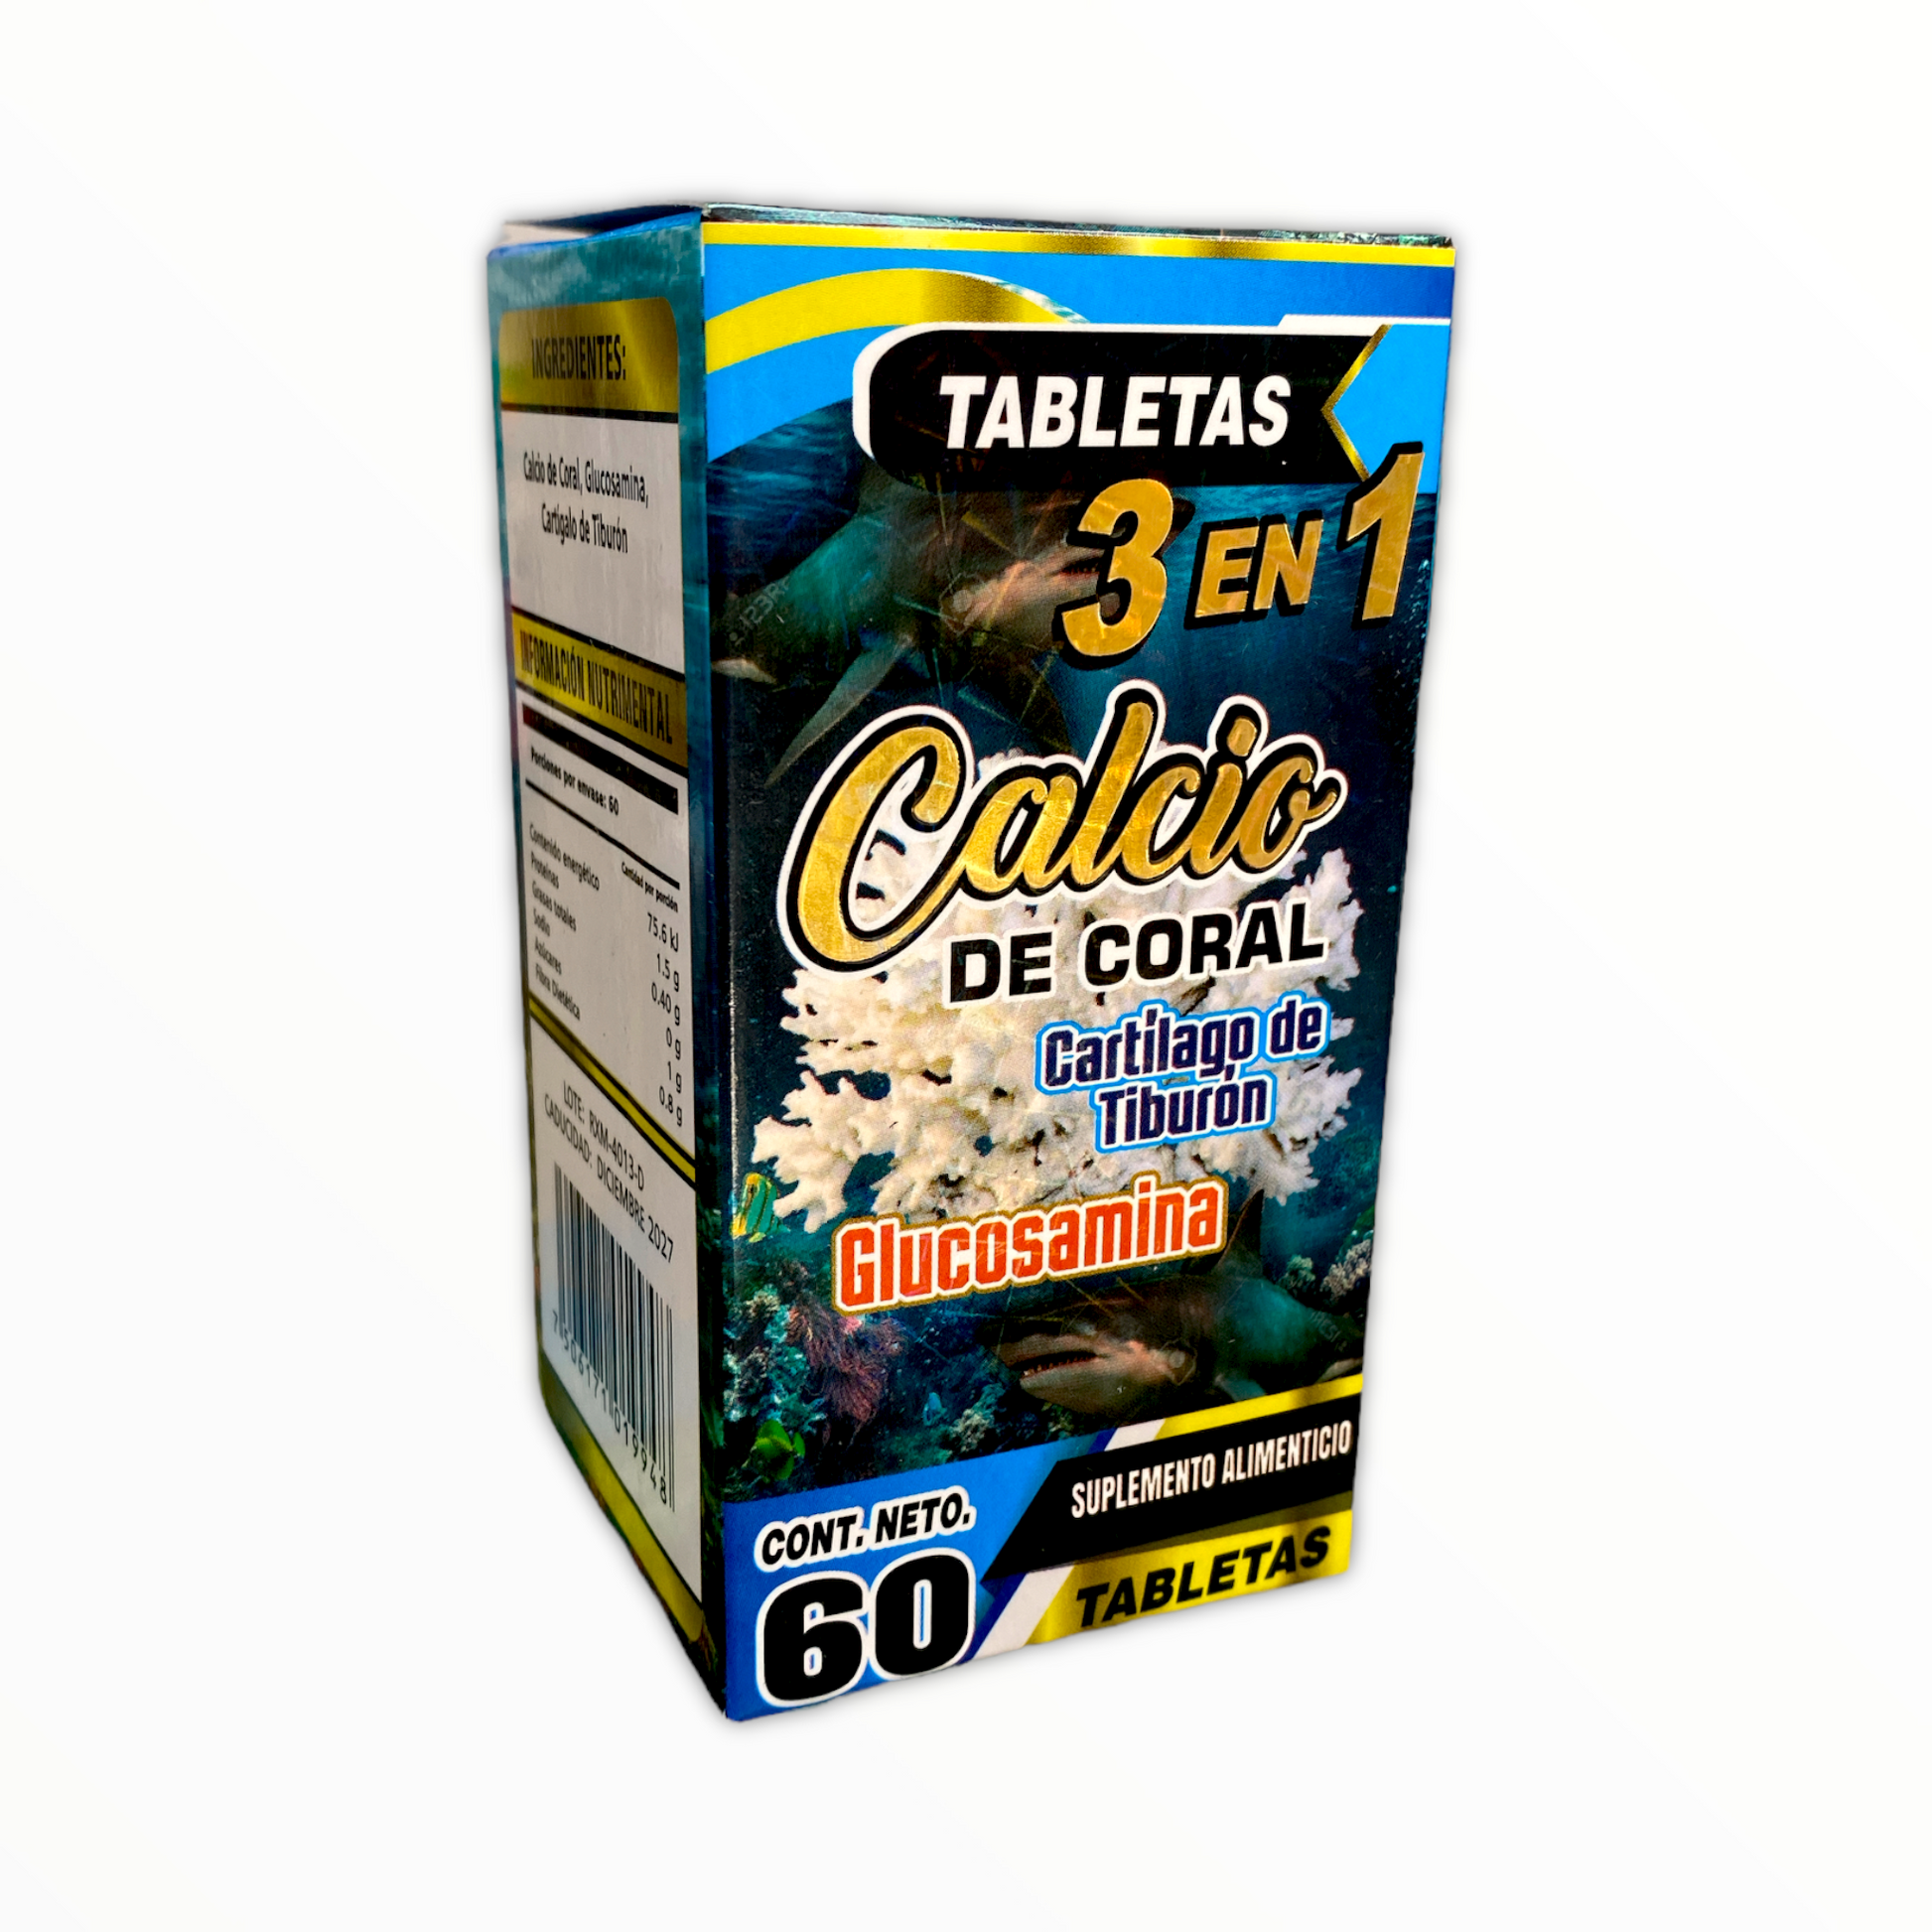 calcio de coral 3 en 1 tiburón glucosamina 60 tabletas the king